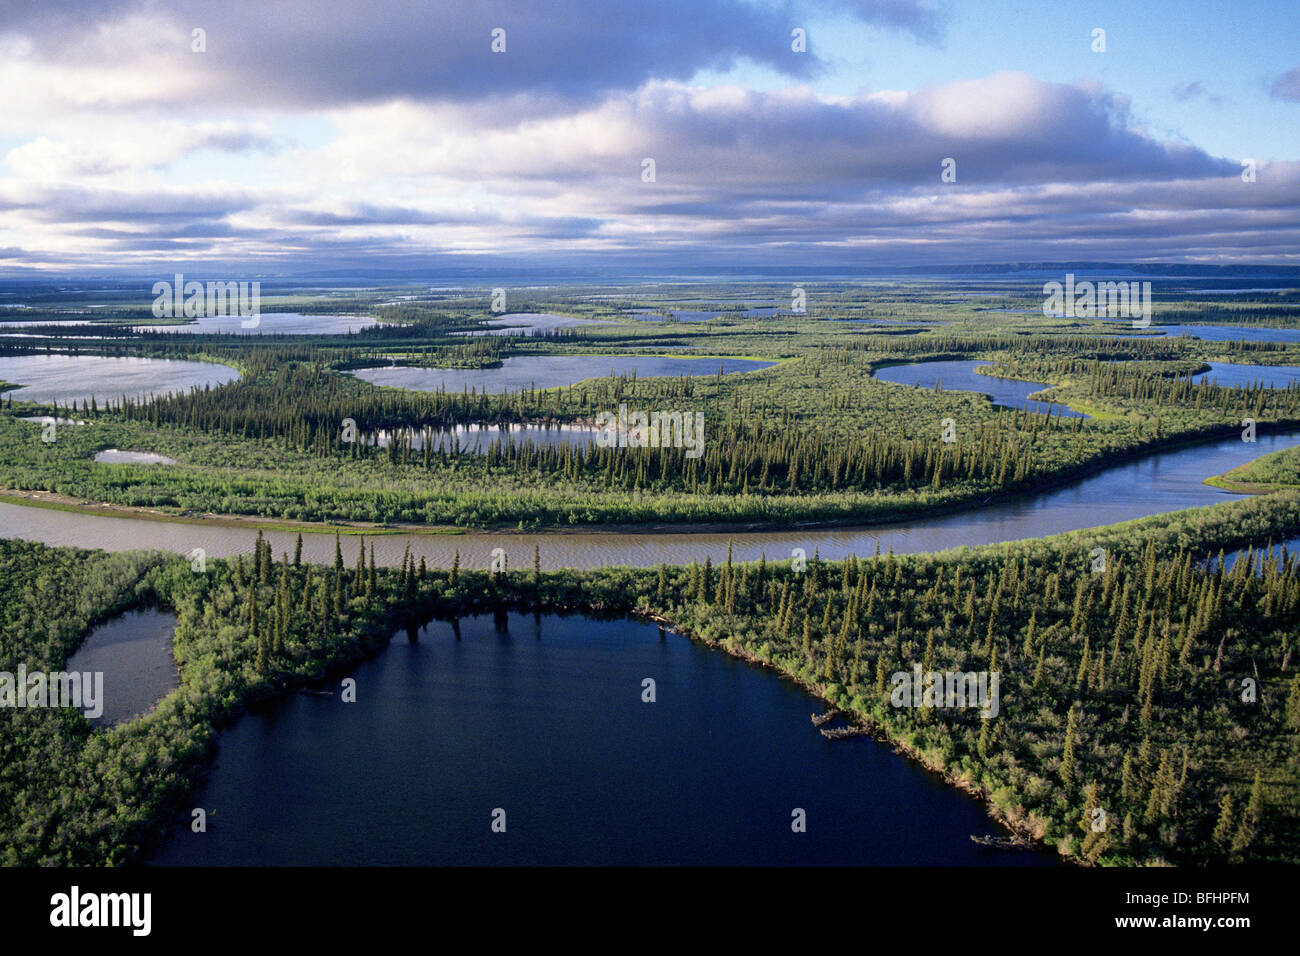 mackenzie-river-delta-nwt-arctic-canada-BFHPFM.jpg